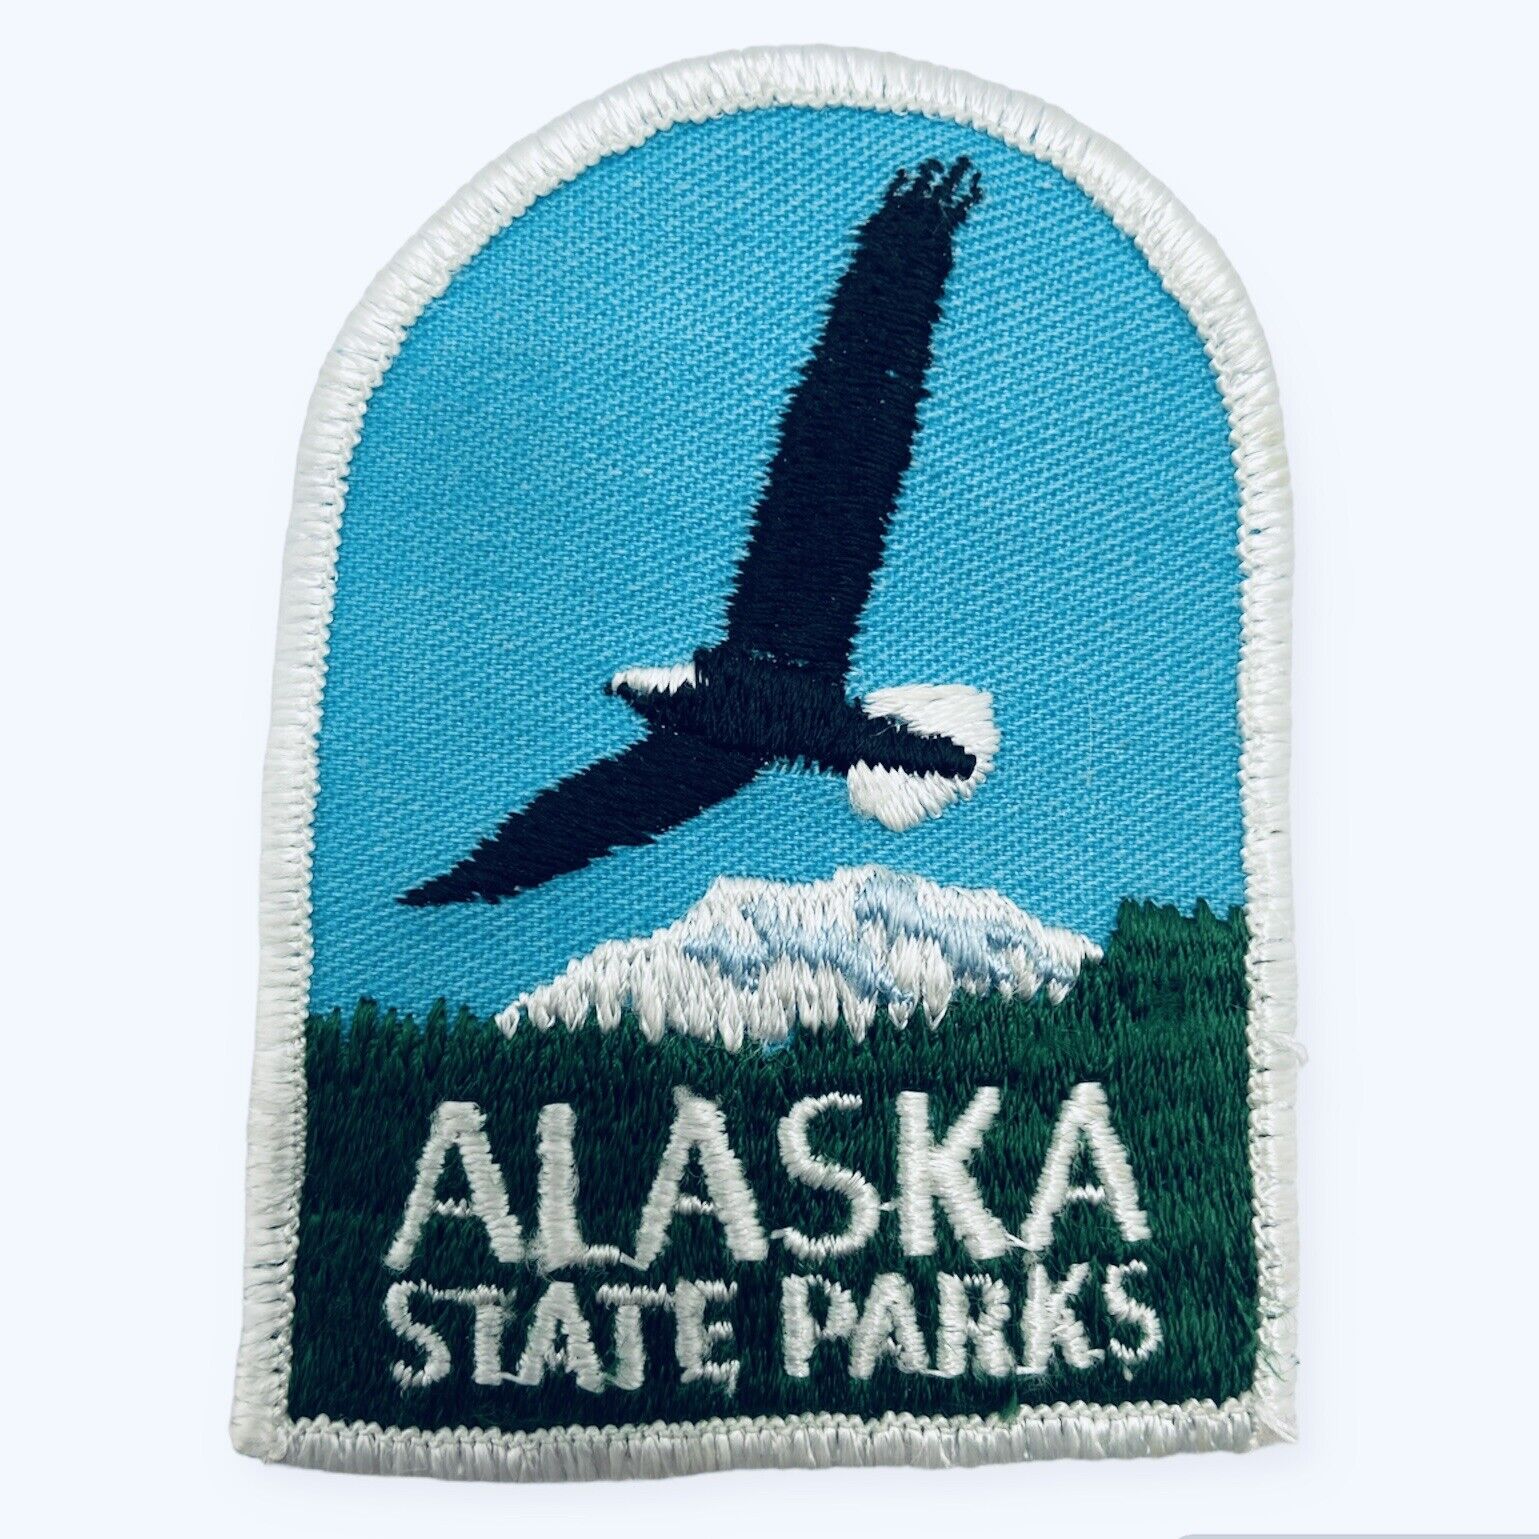 Vintage Alaska State Parks Highway Bald Eagle Denali Vinyl Patch 3.5\